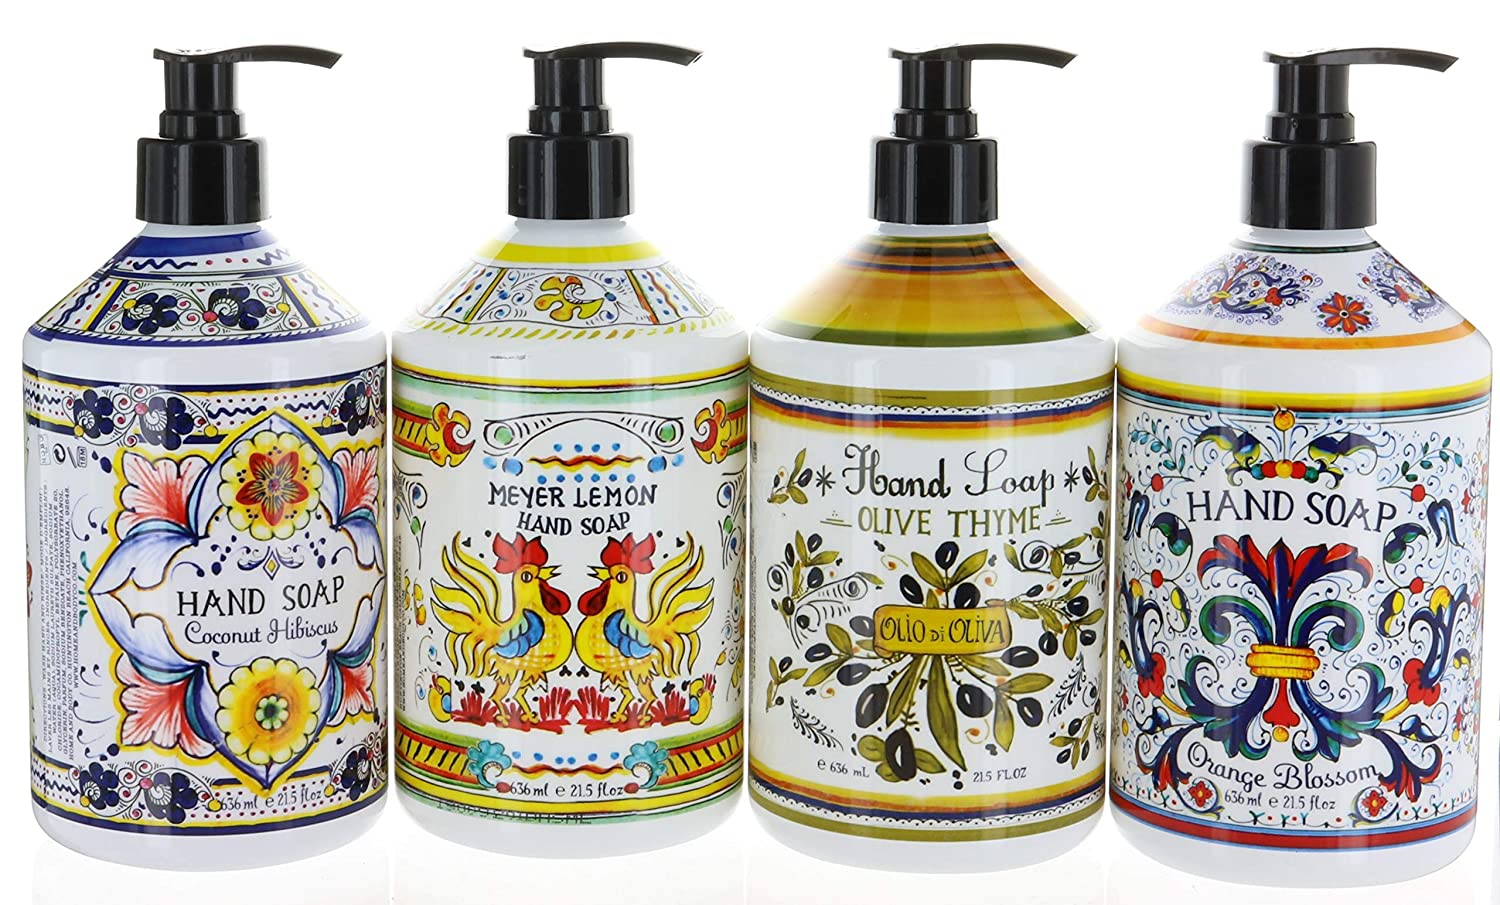 Home & Body Company Italian Decorative Hand Soap, 4-Pack